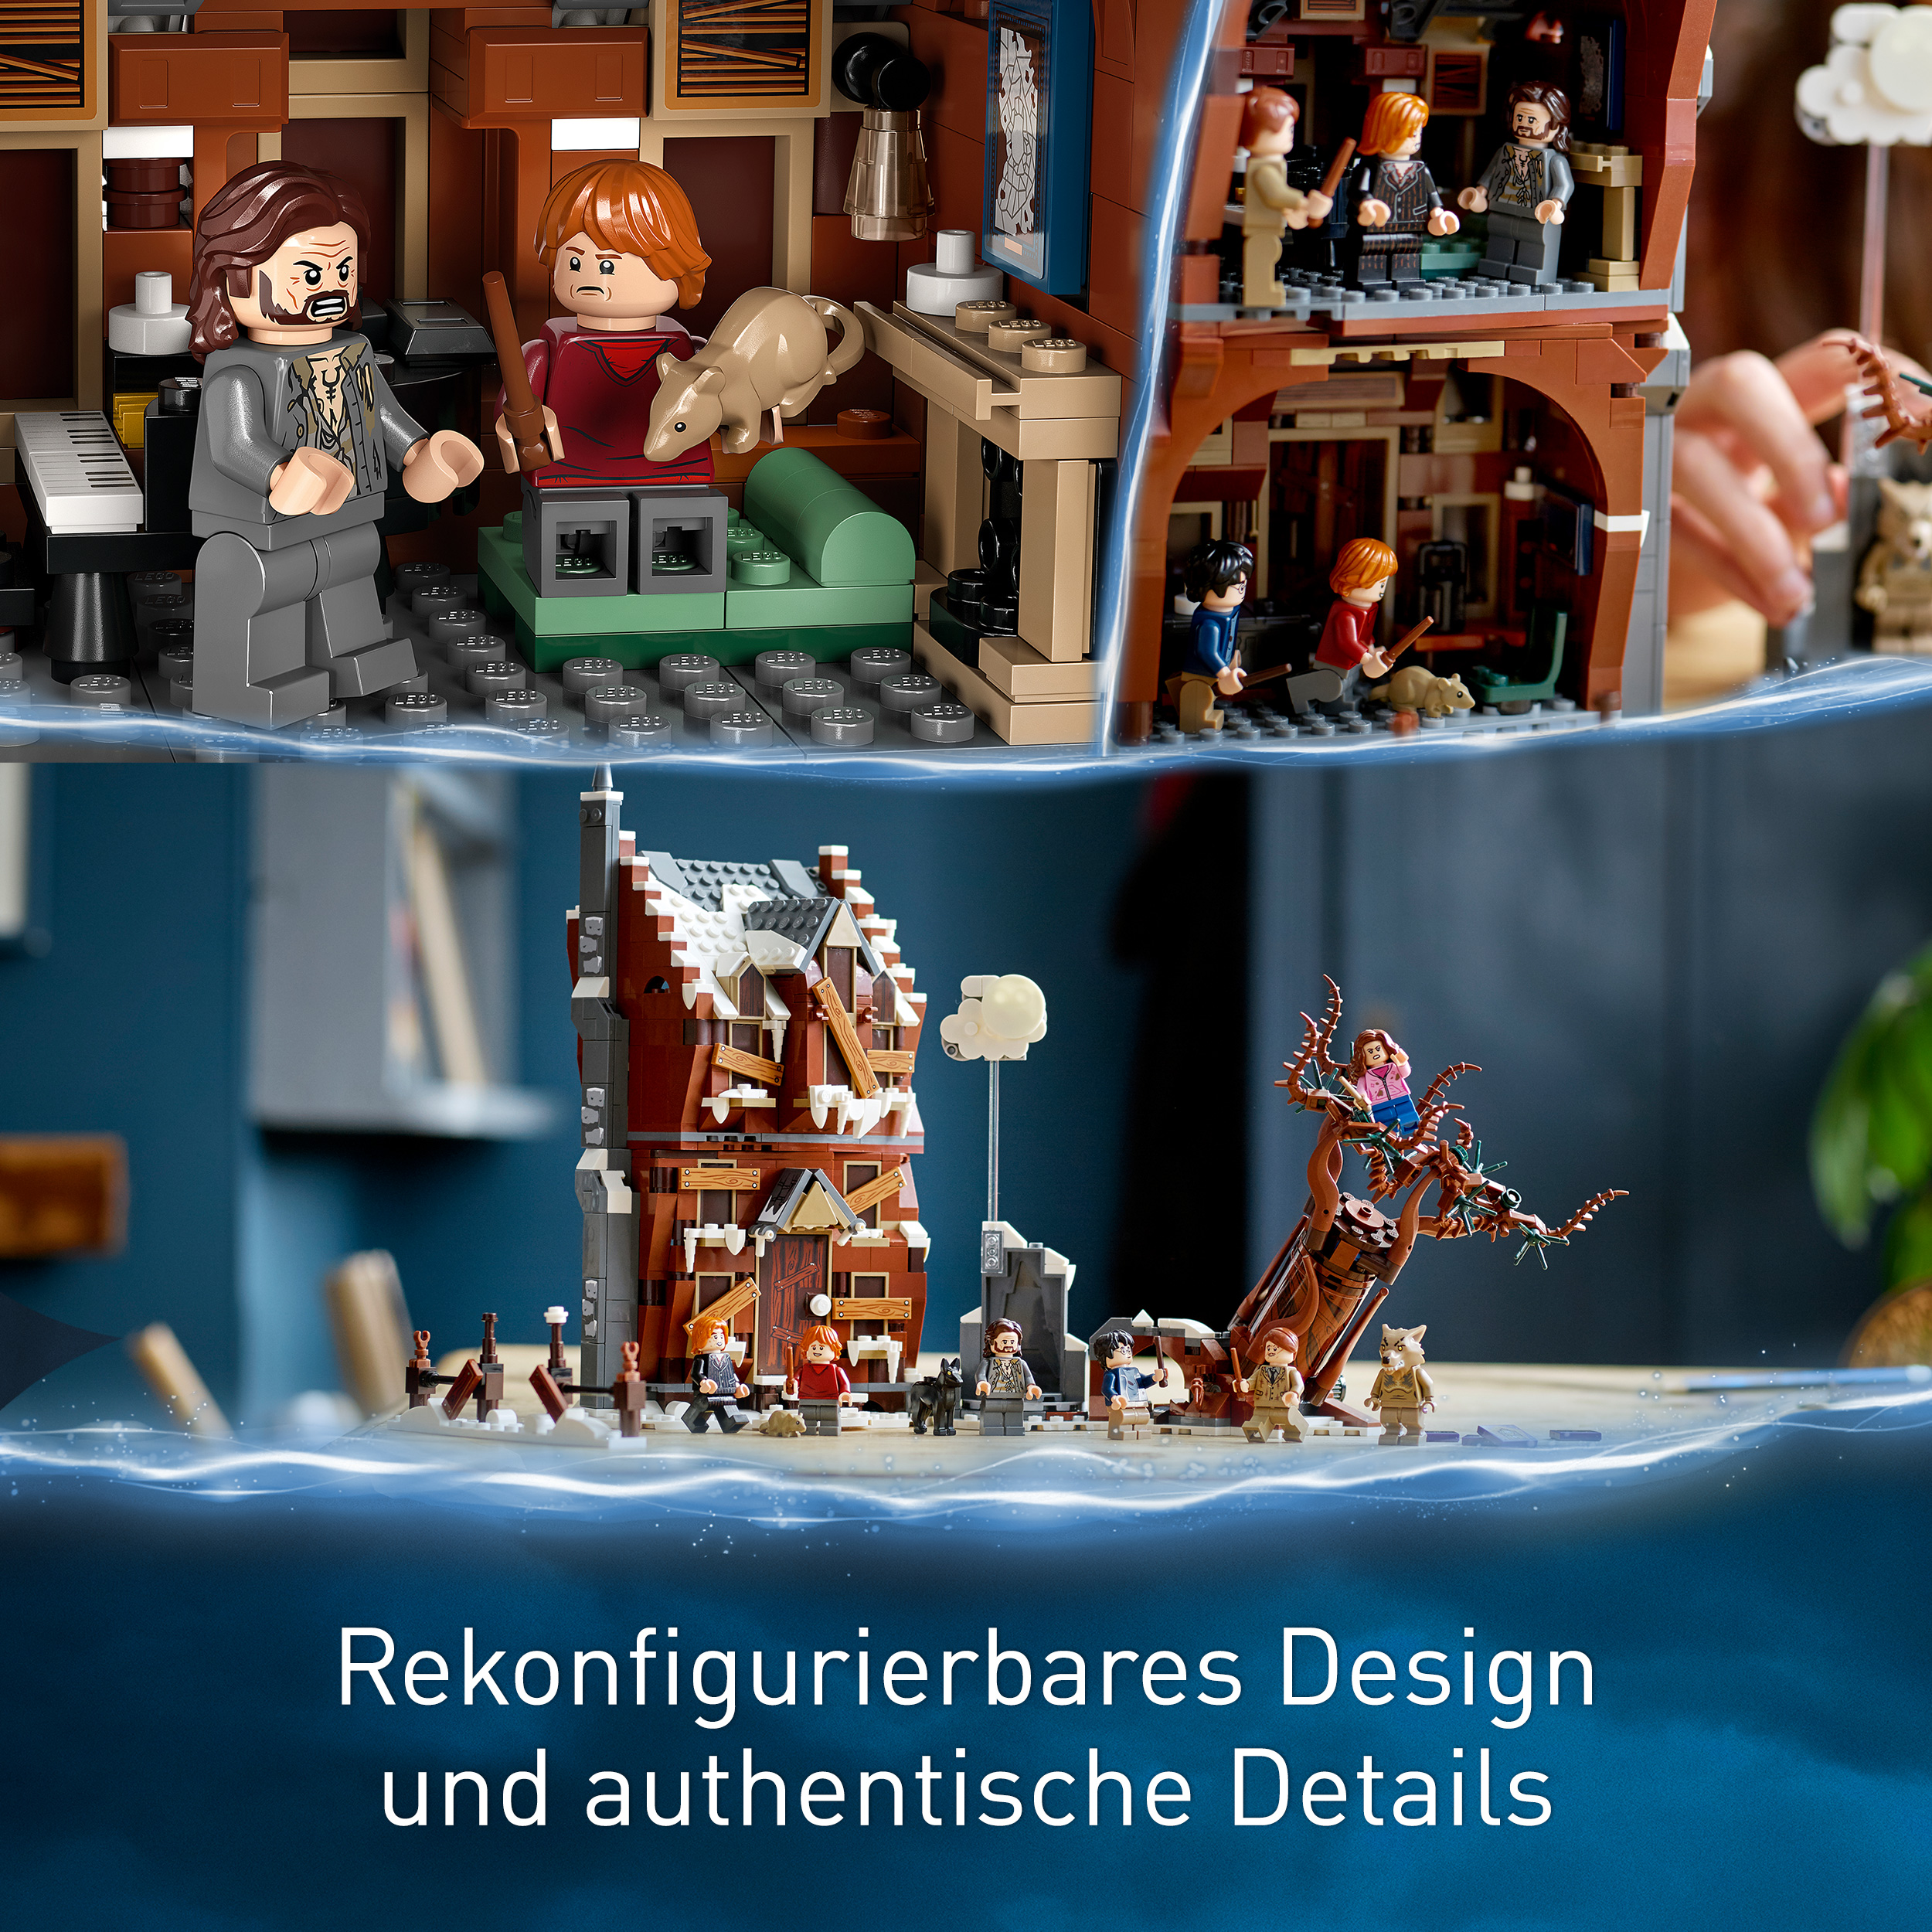 Mehrfarbig Potter Bausatz, Heulende 76407 Peitschende LEGO Hütte und Weide Harry